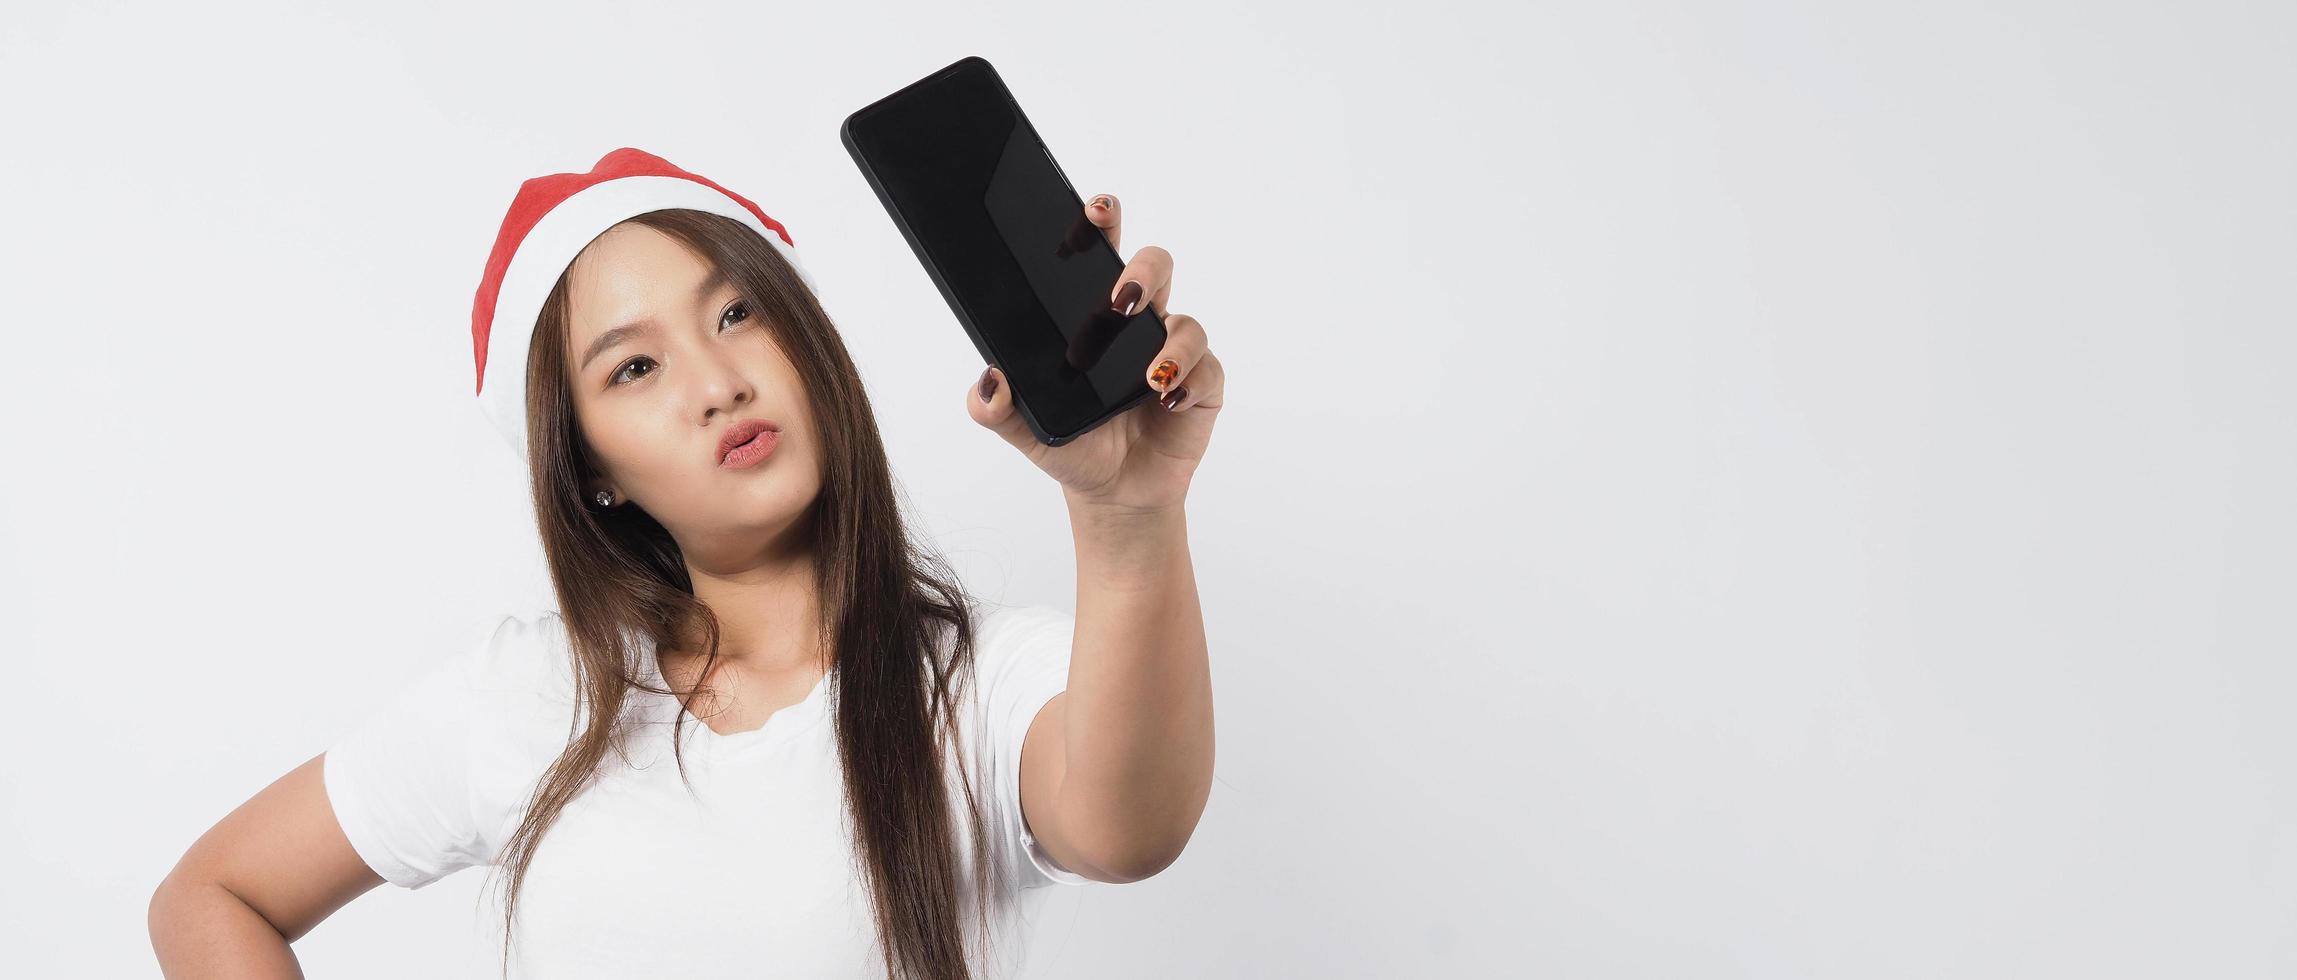 donna asiatica con smartphone in mano che posa come selfie o videochiamata foto